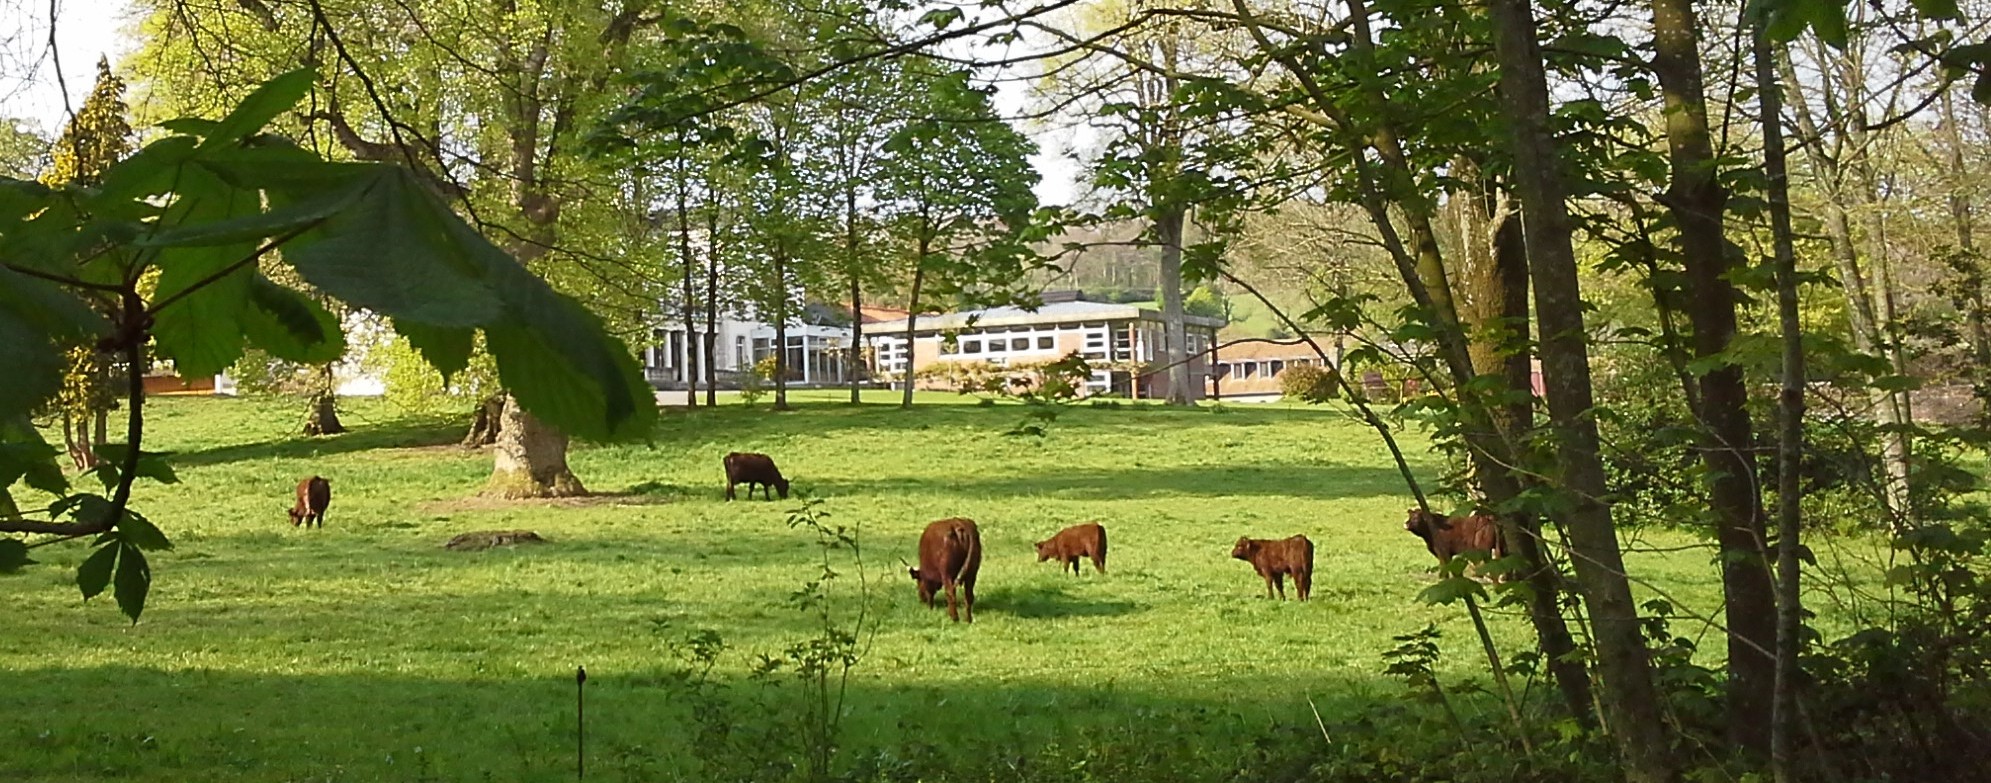 la parc paisible avec les vaches